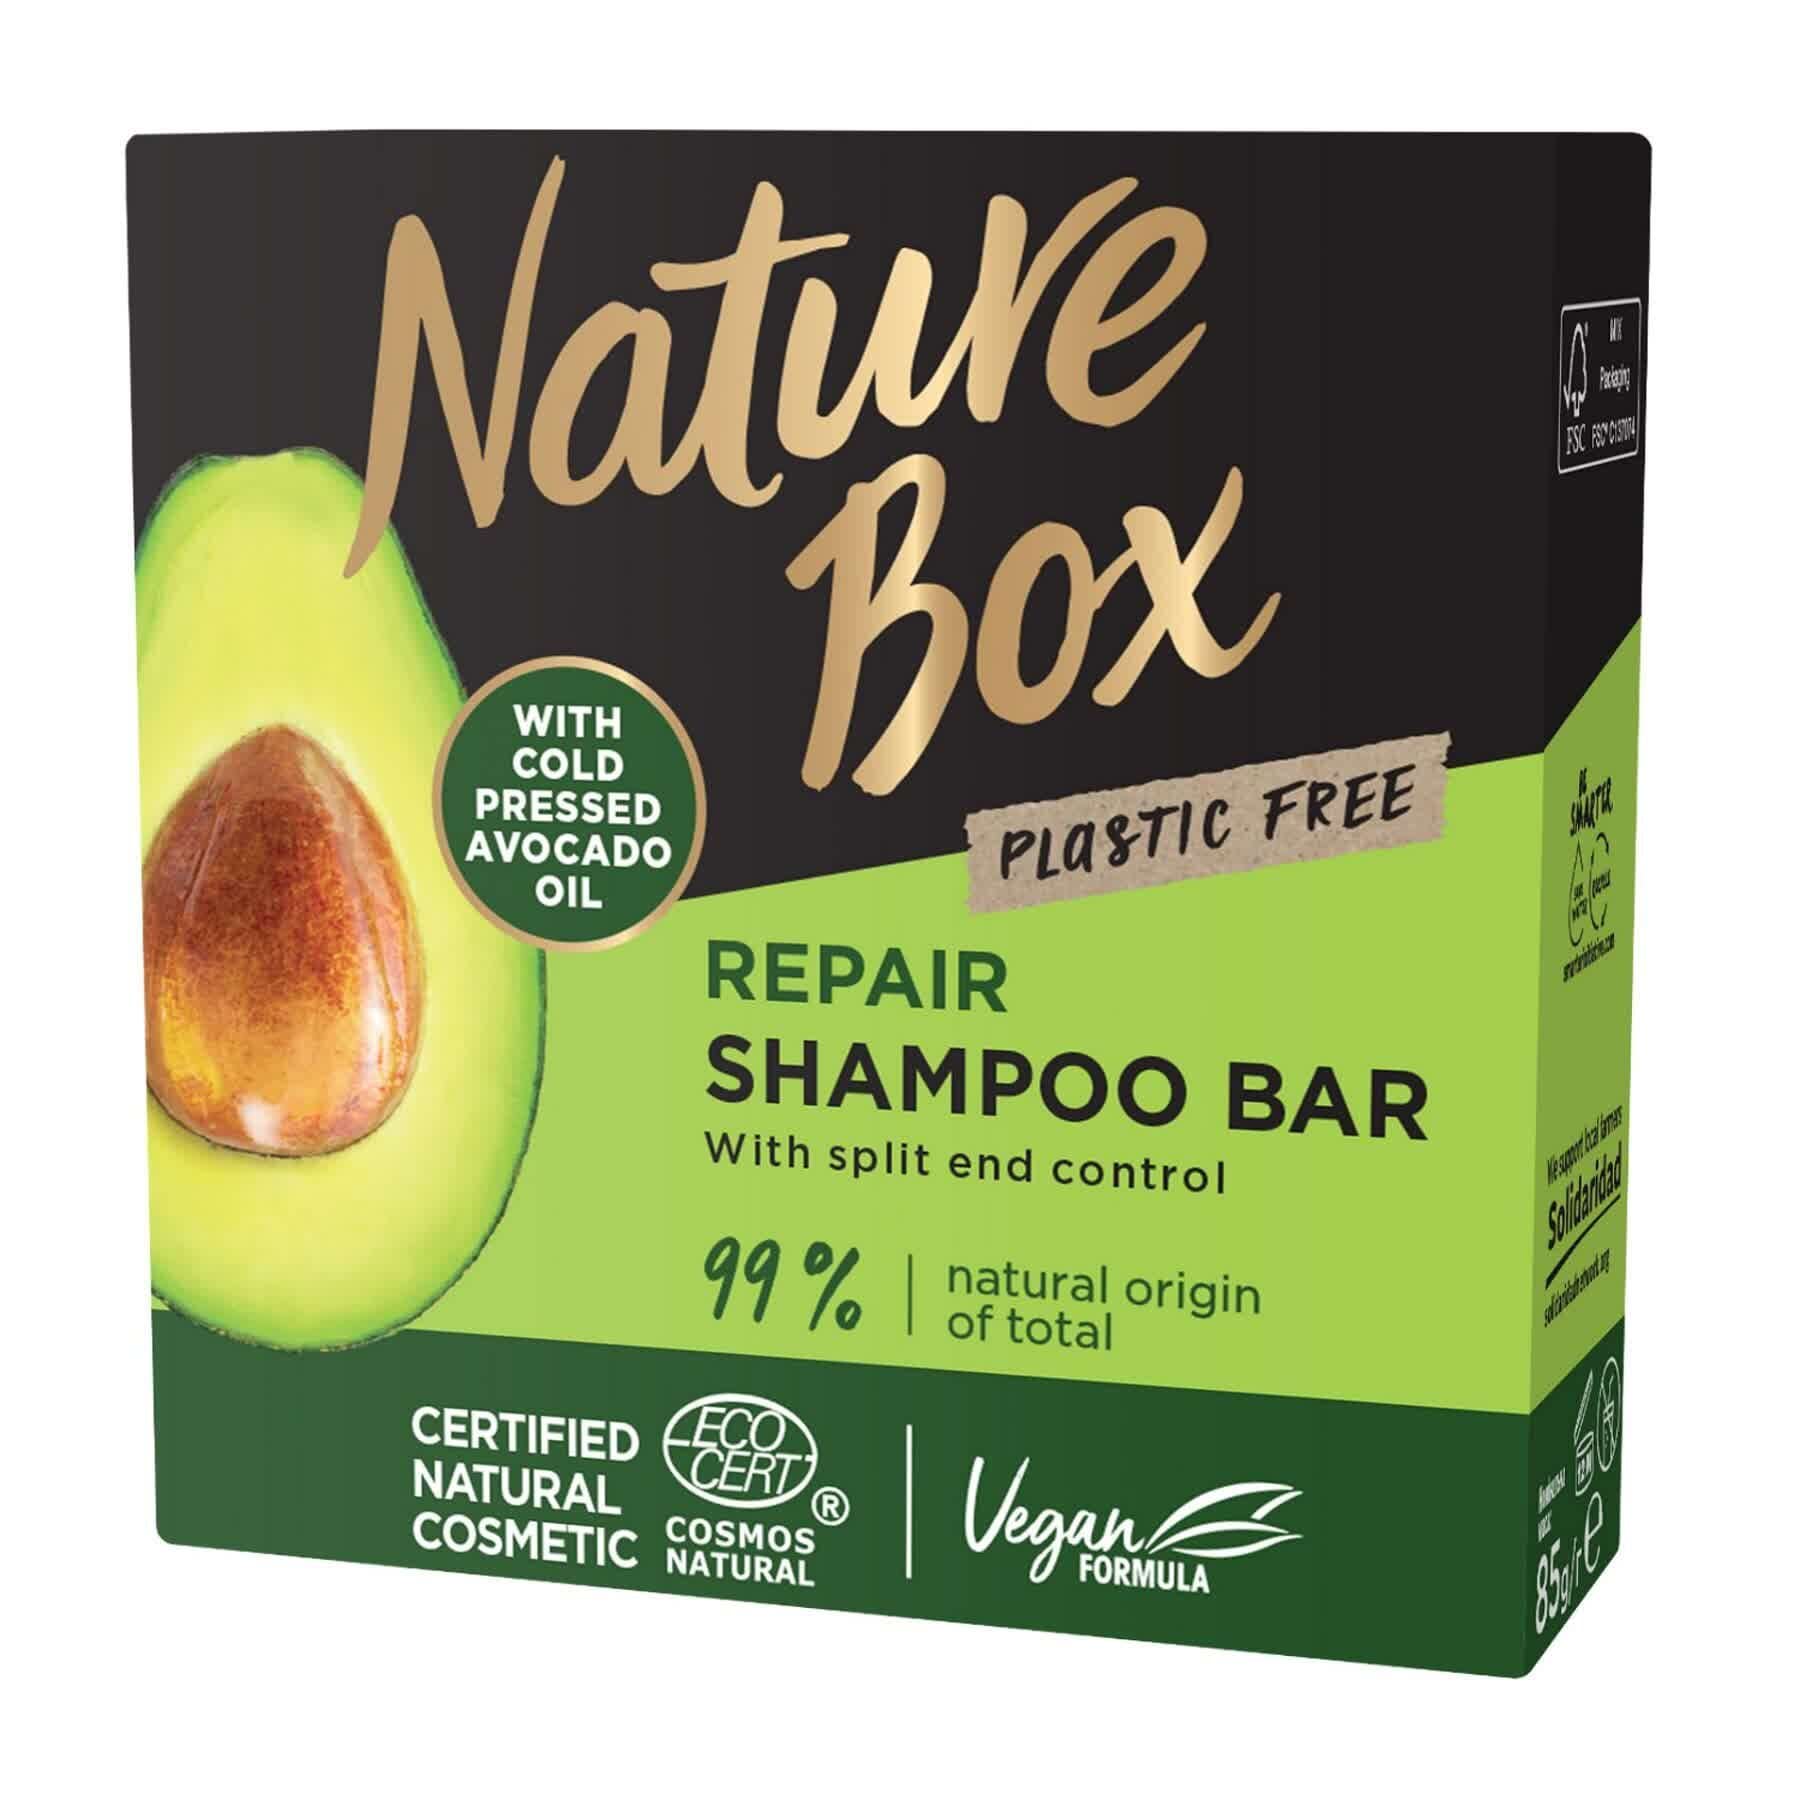 Твердый шампунь Nature Box для восстановления волос с маслом авокадо холодного отжима 85 г